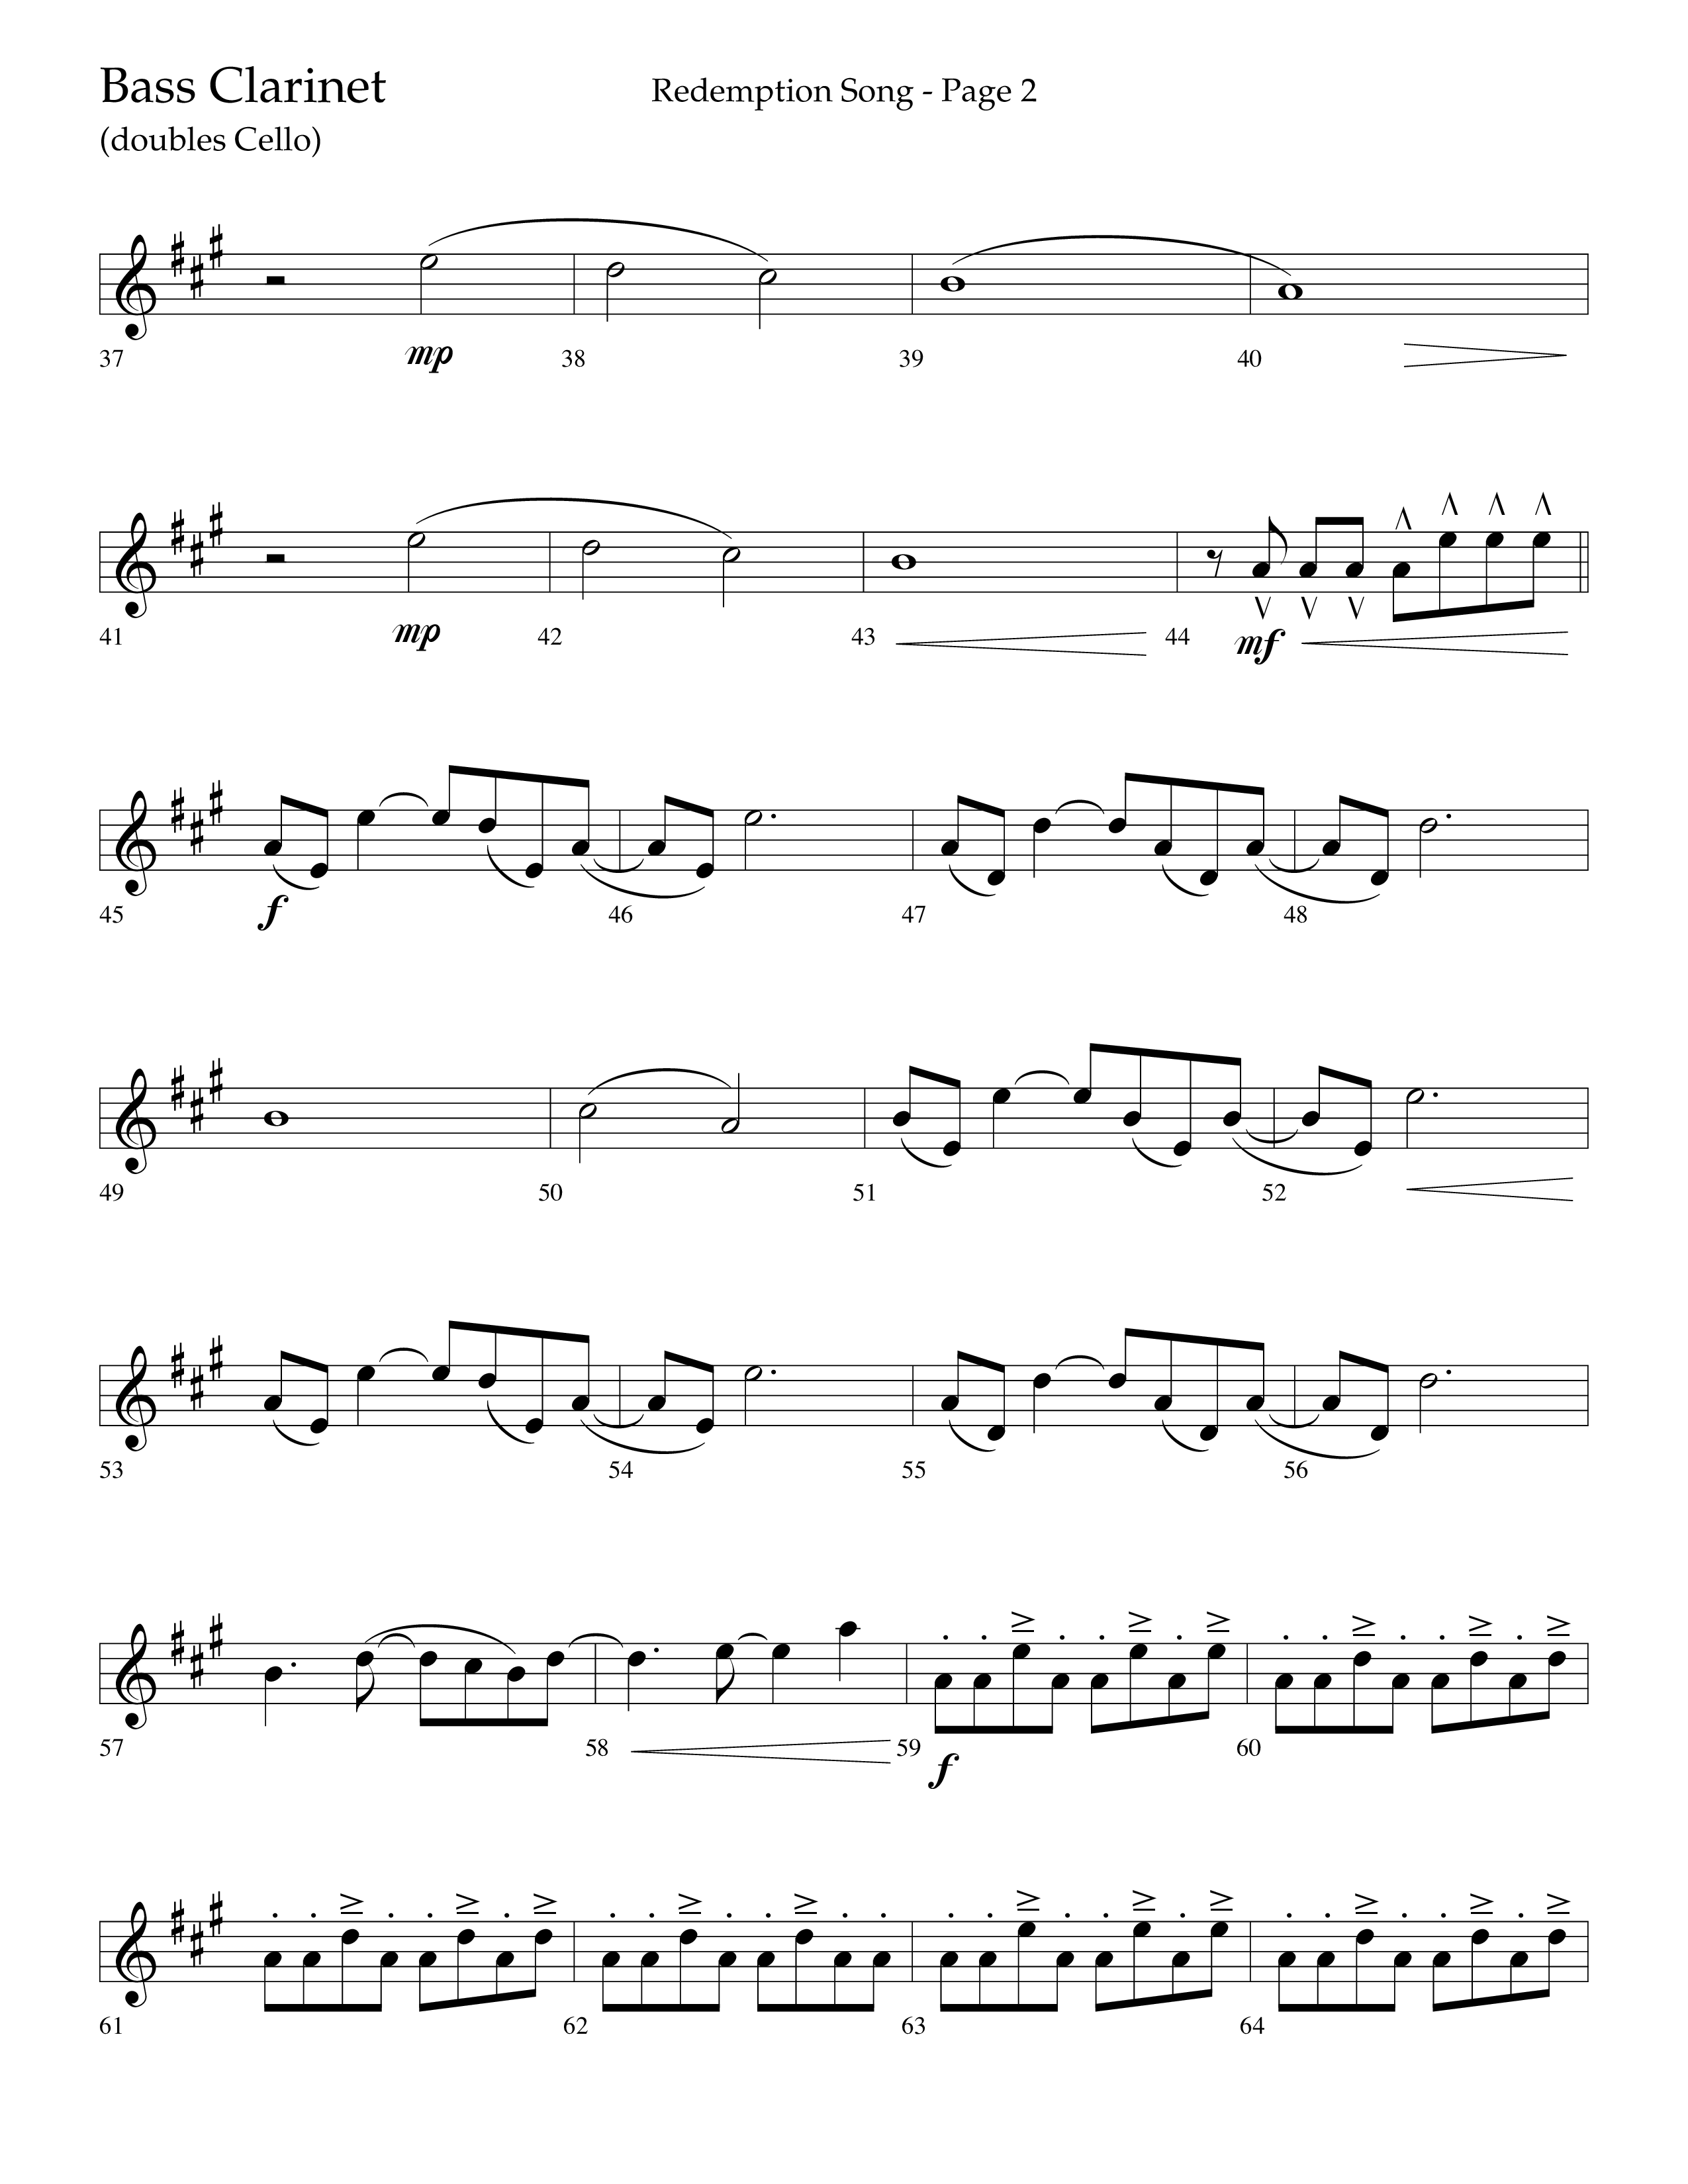 Redemption Song (Choral Anthem SATB) Bass Clarinet (Lifeway Choral / Arr. Cliff Duren)